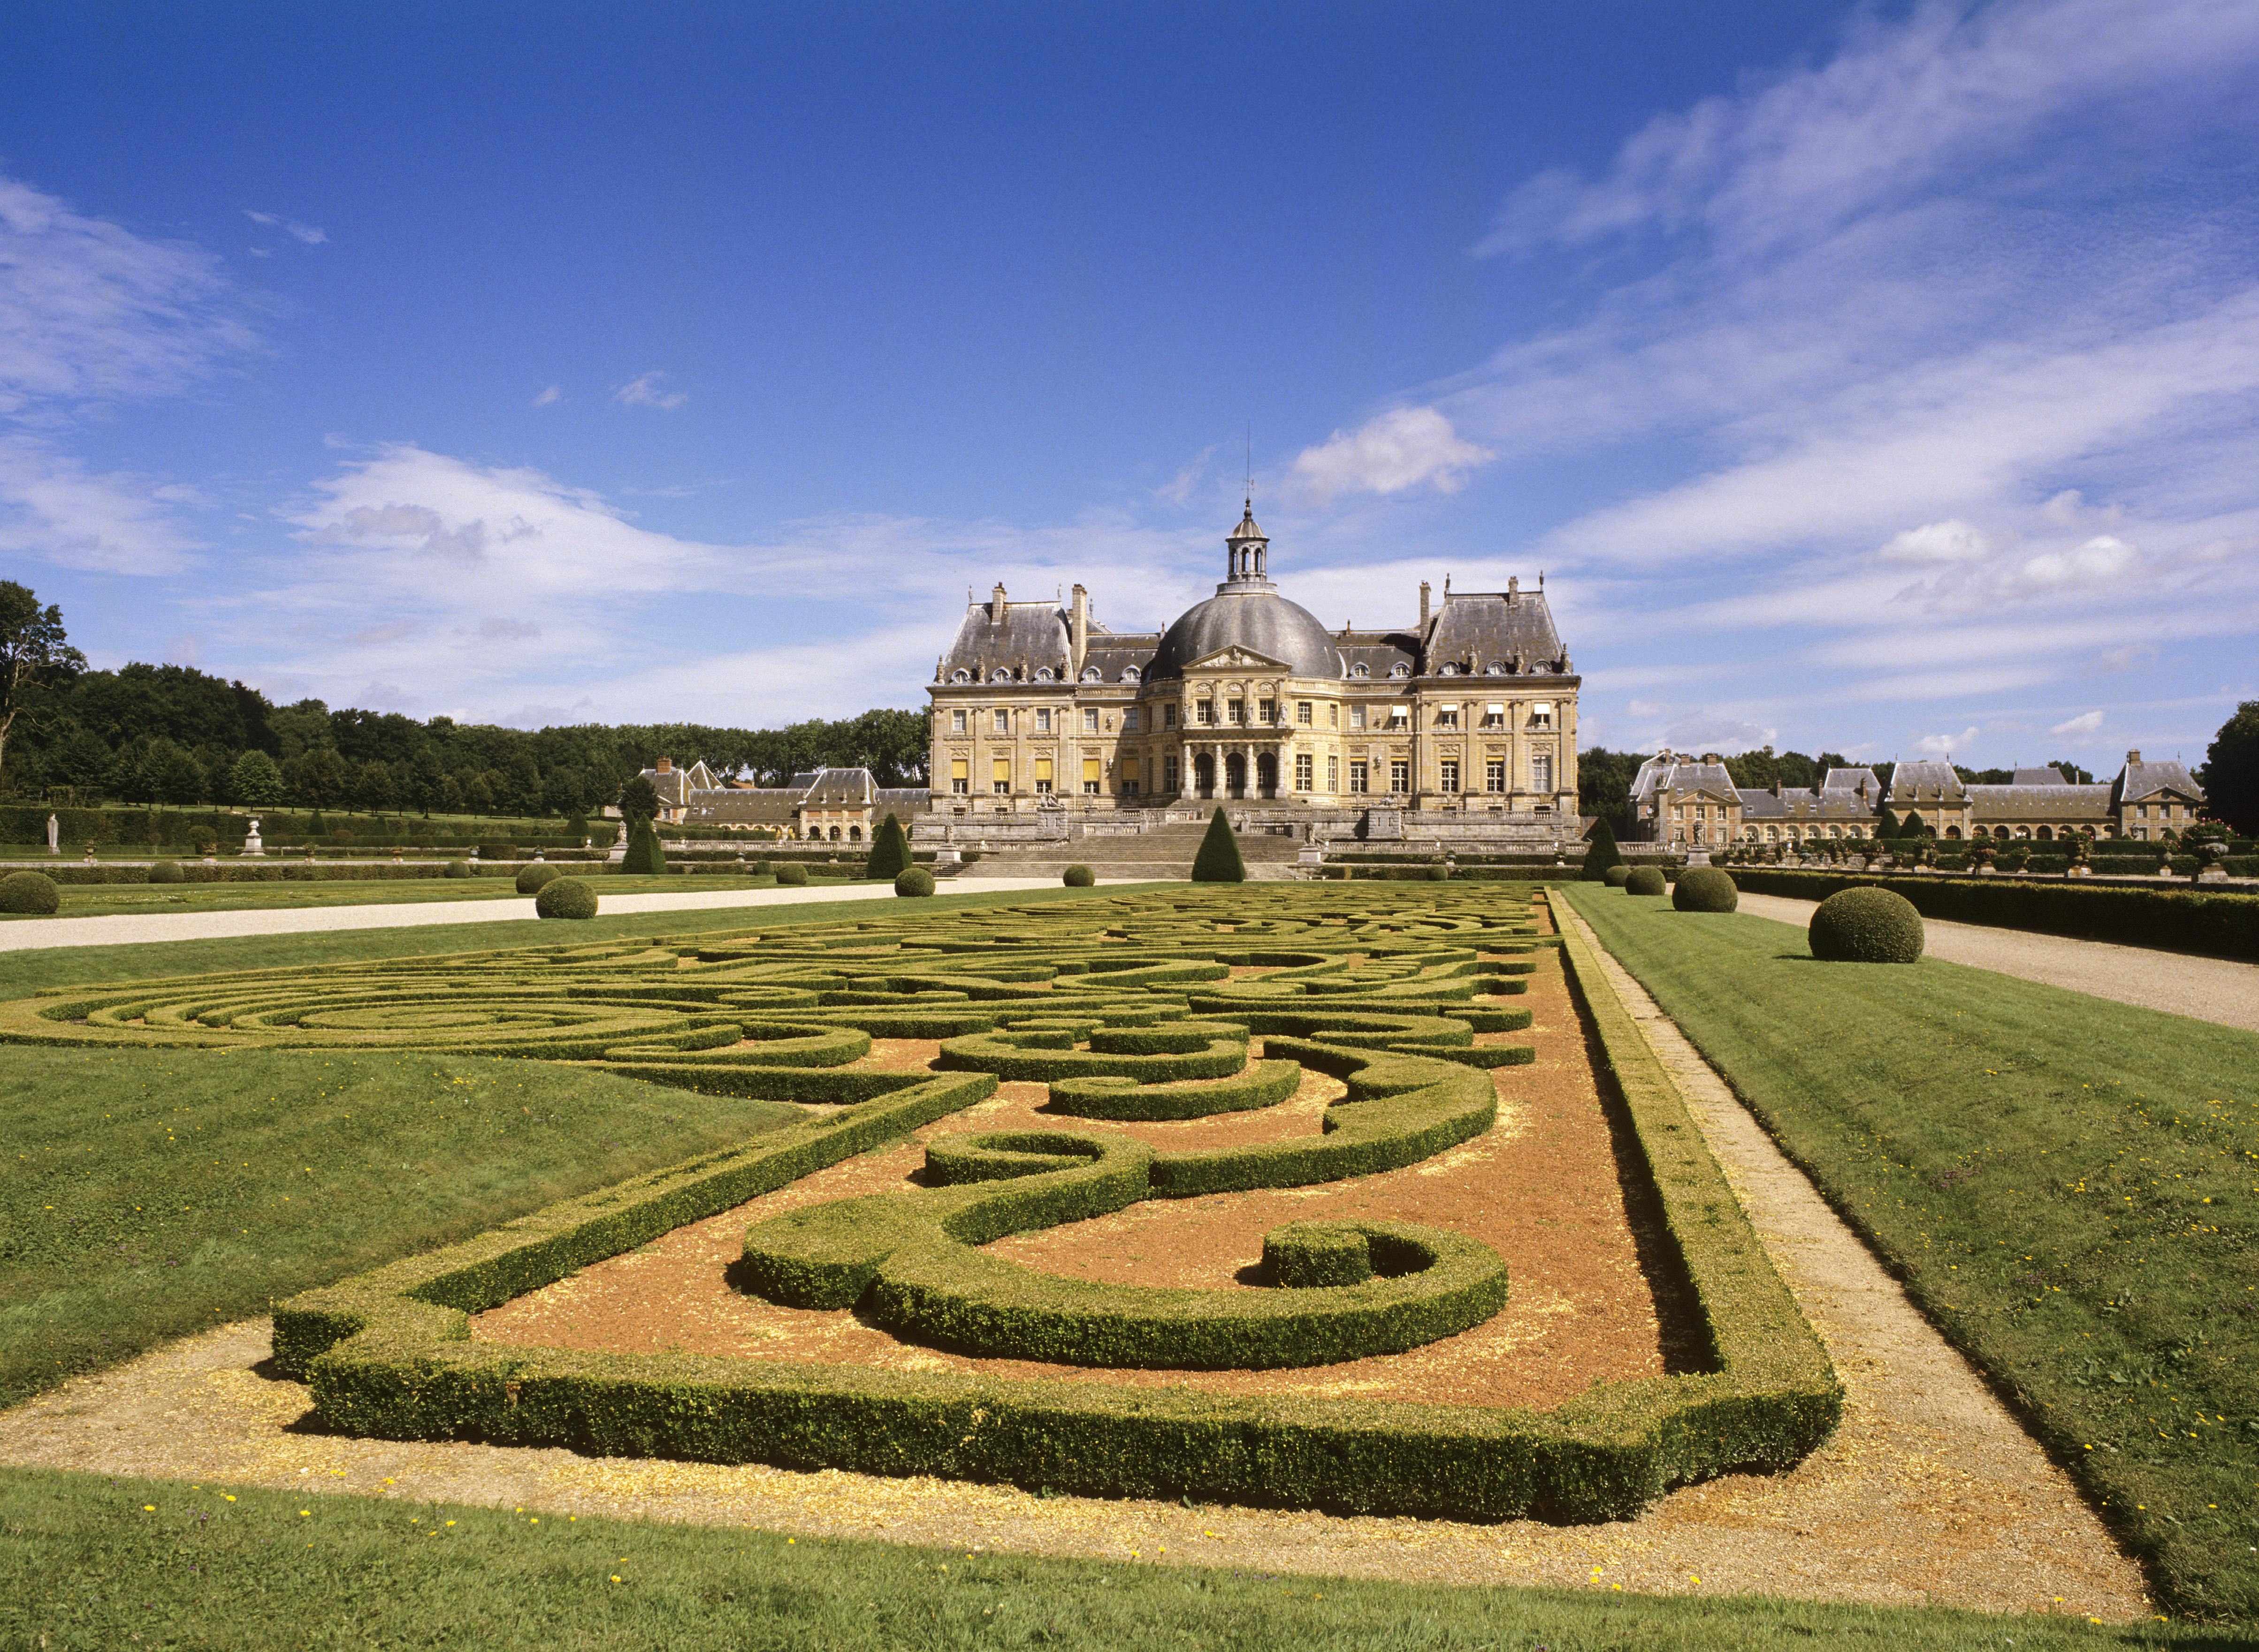 Château de Vaux-le-Vicomte - Europe Discovery Travel